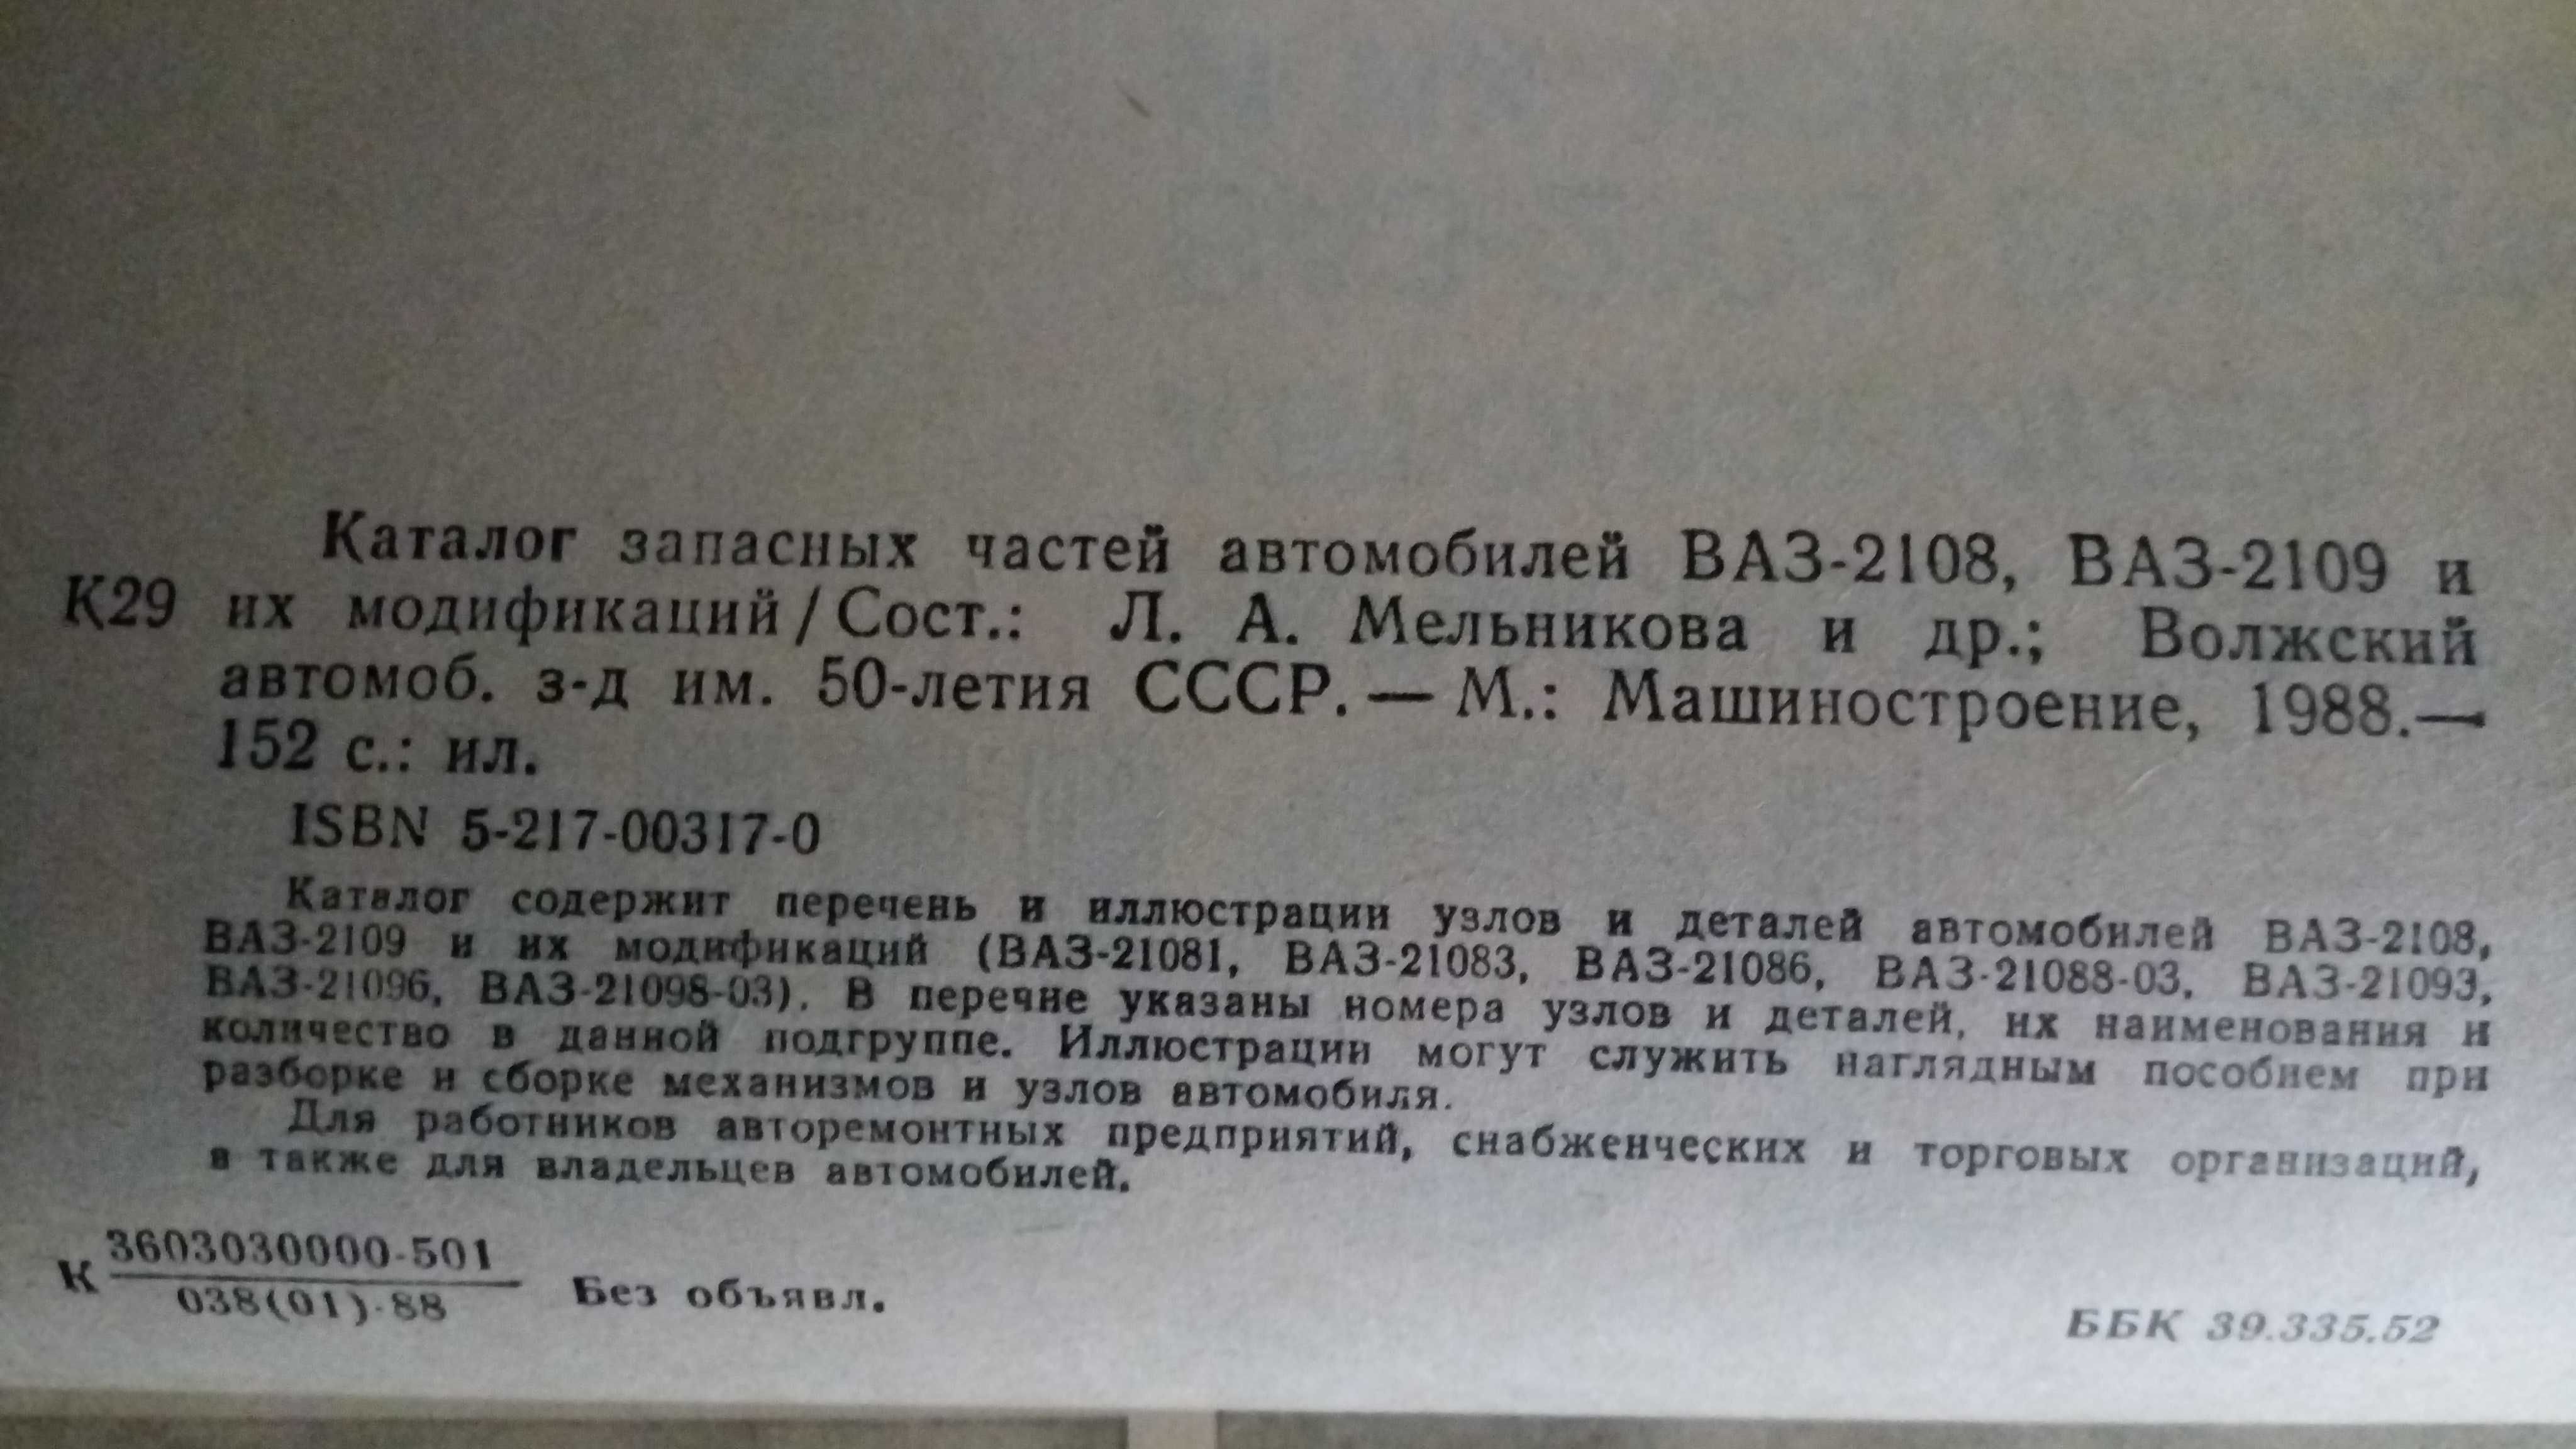 Каталог запасных частей ВАЗ-2108-2109, 1988 год в использовании не был